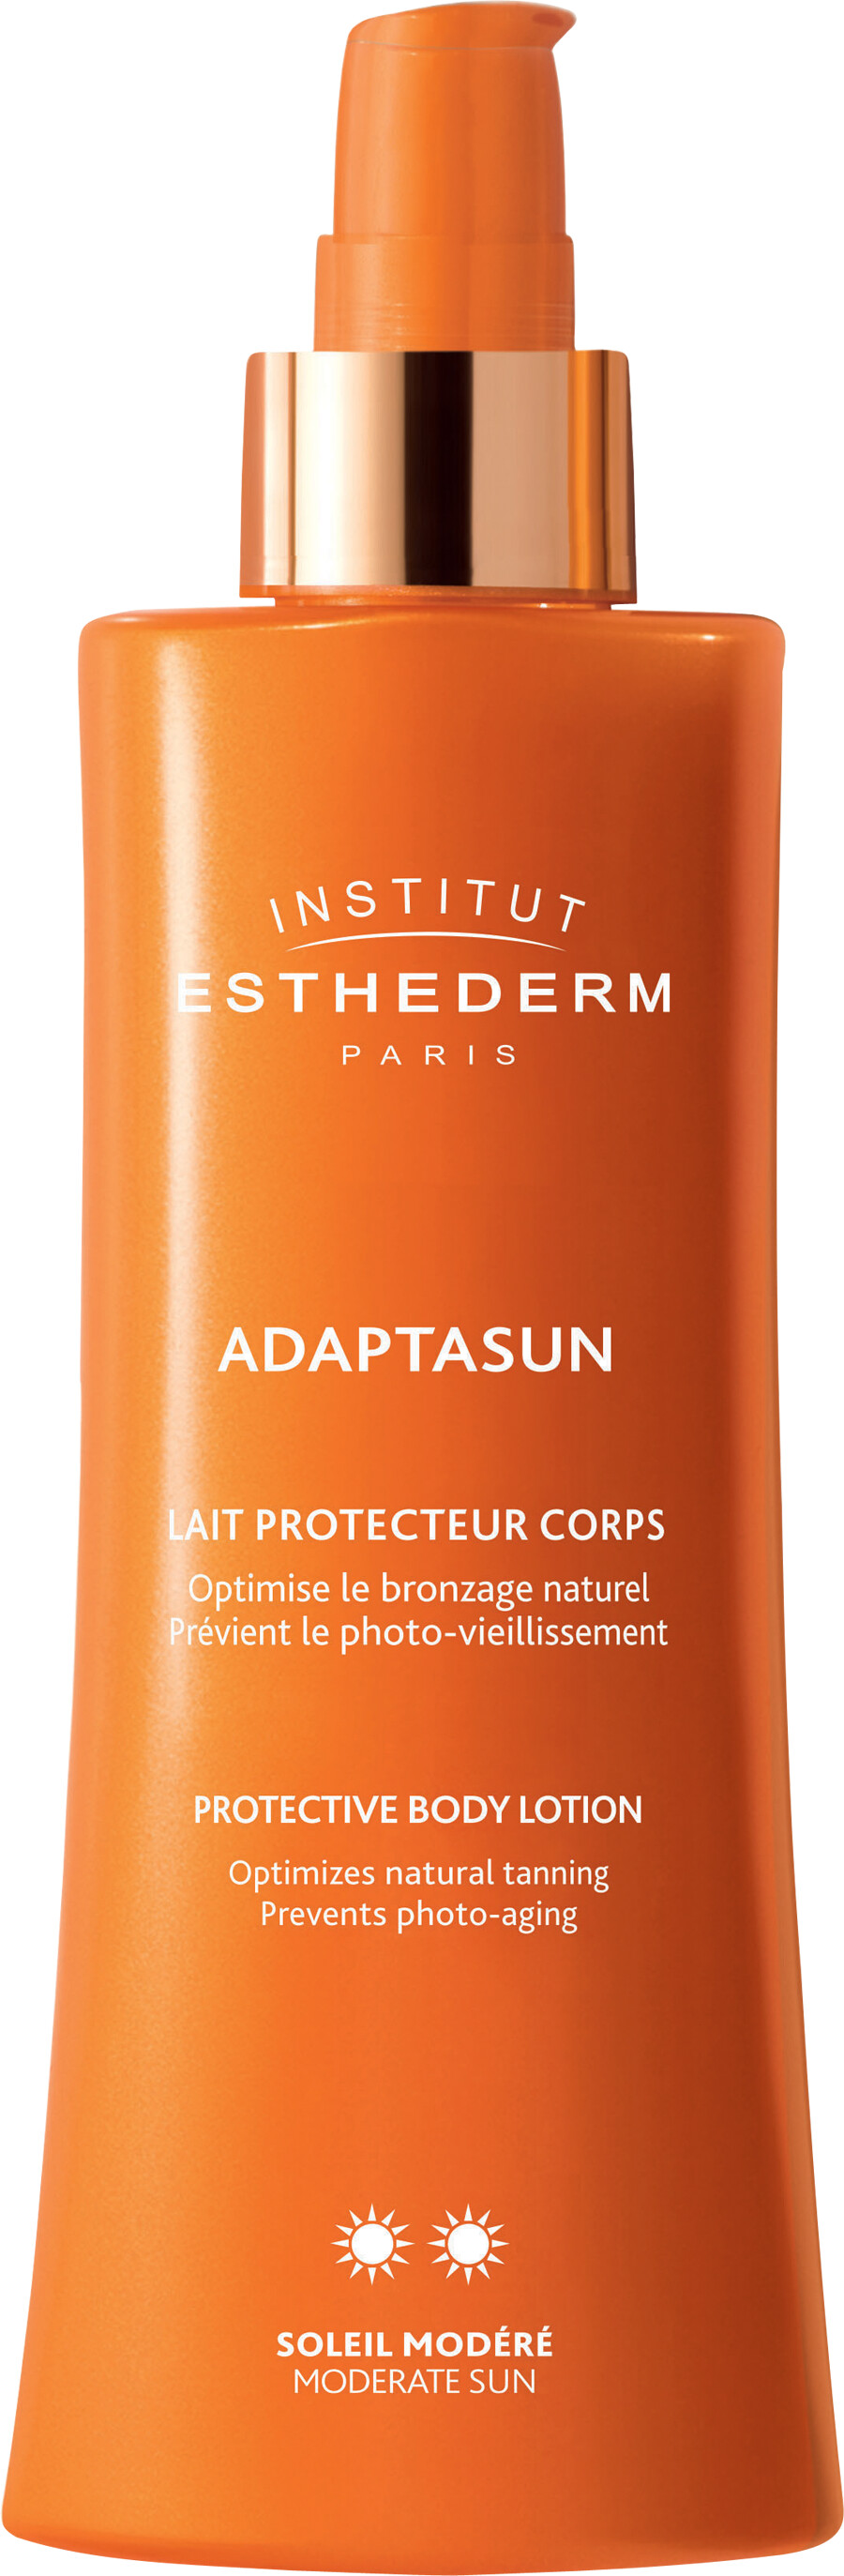 Institut Esthederm Adaptasun Protective Body Lotion - Moderate Sun 200ml